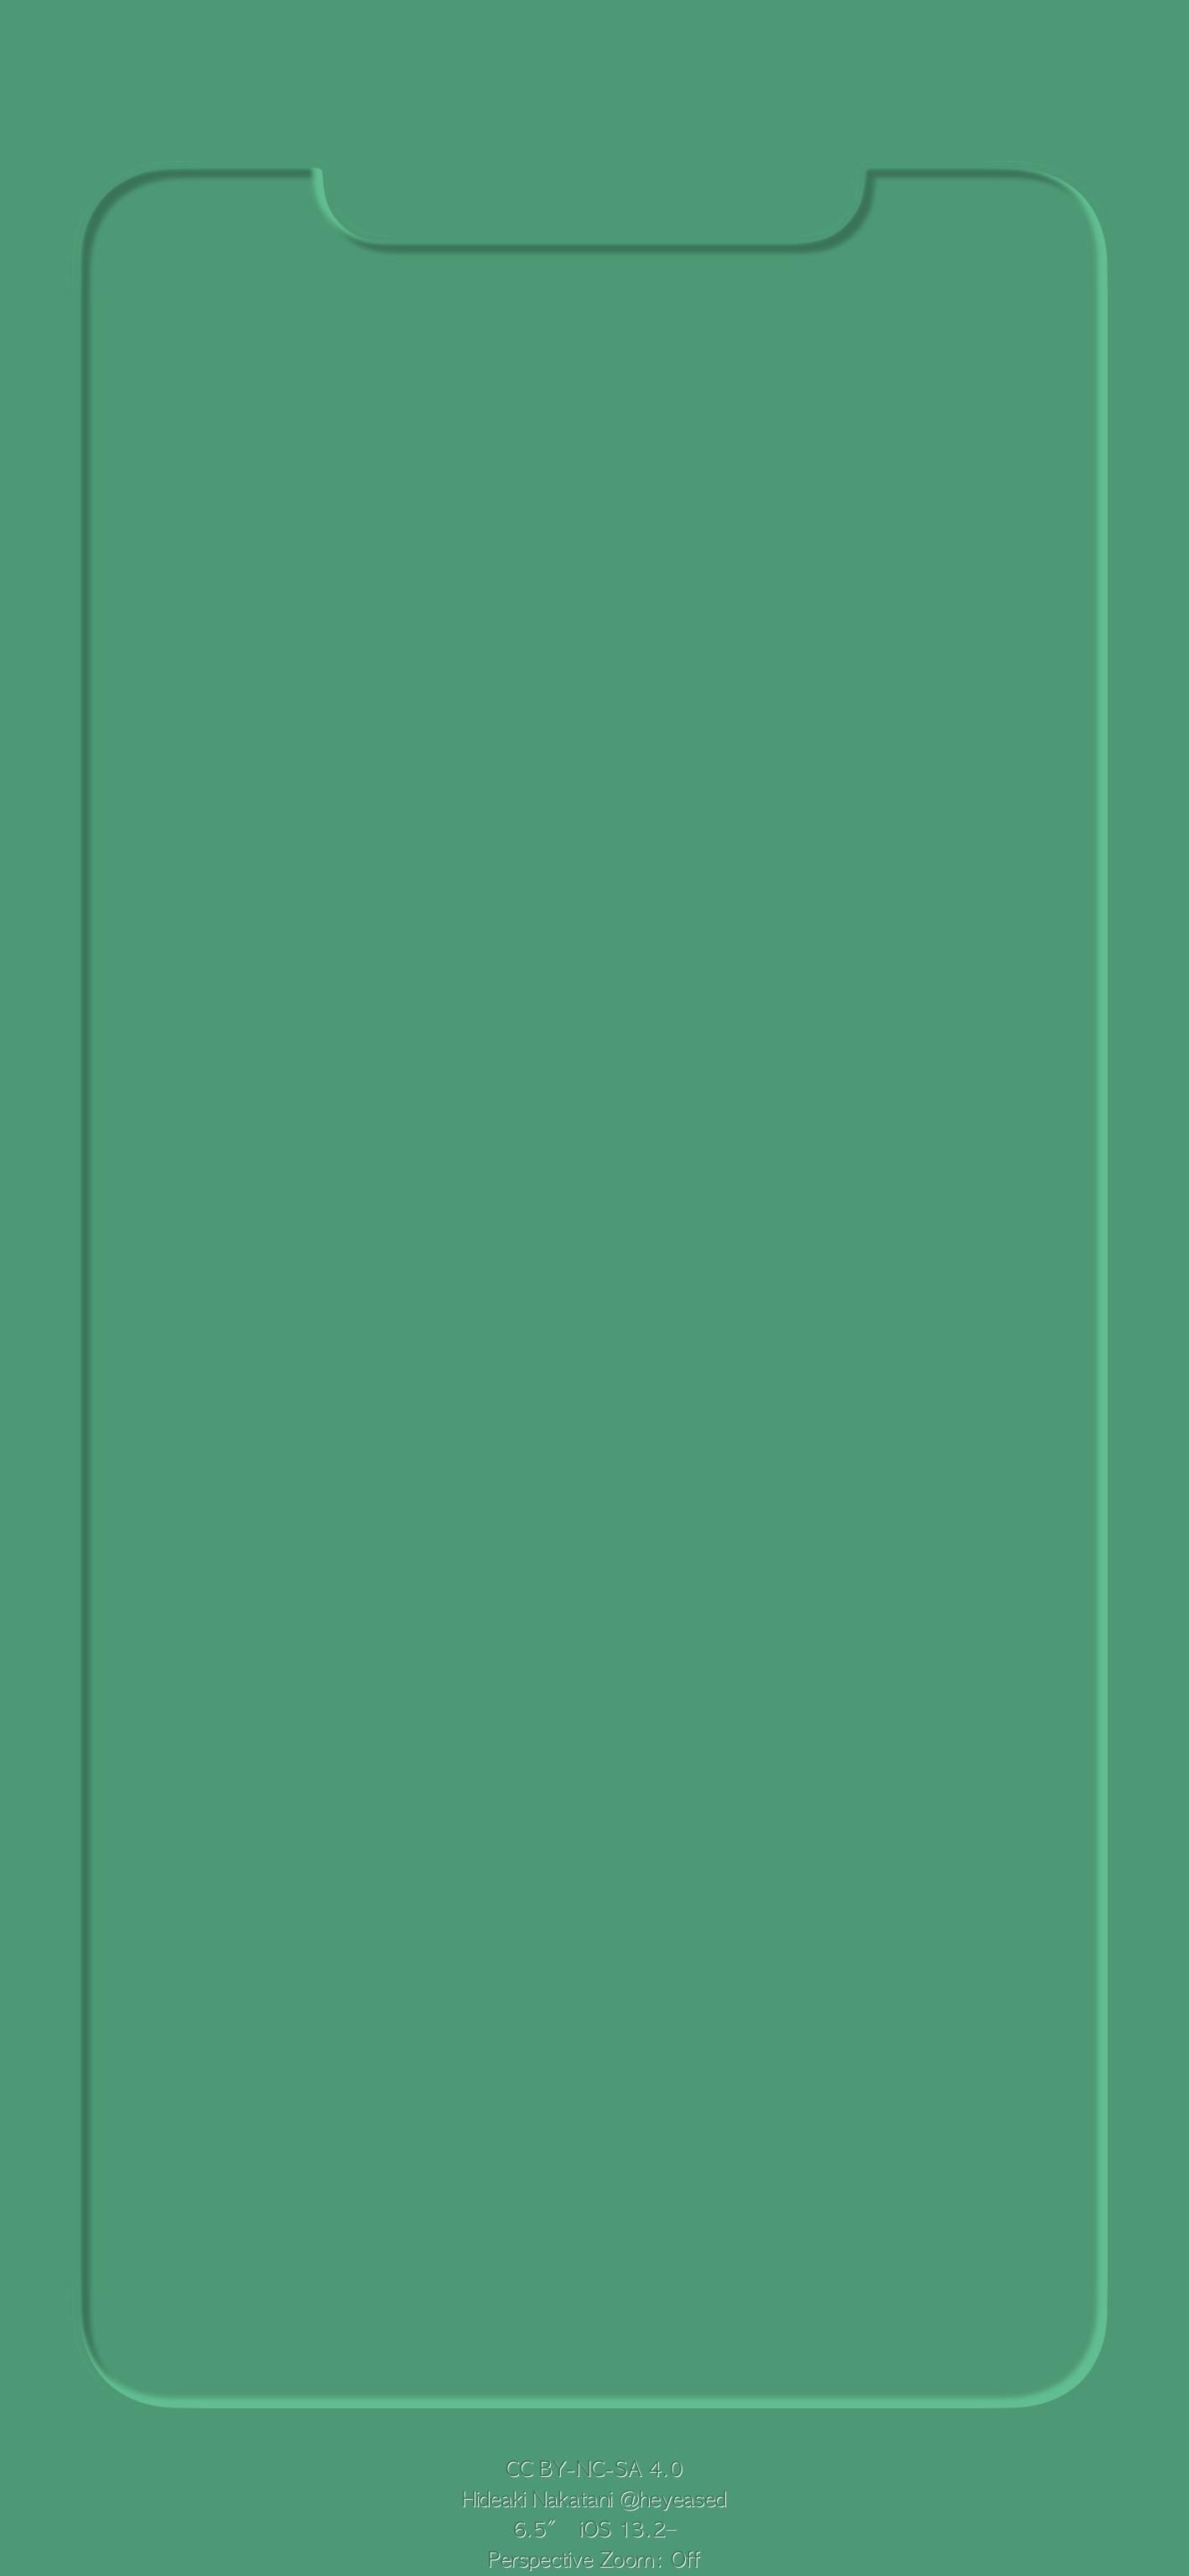 3d border max green iphone wallpaper heyeased idownloadblog